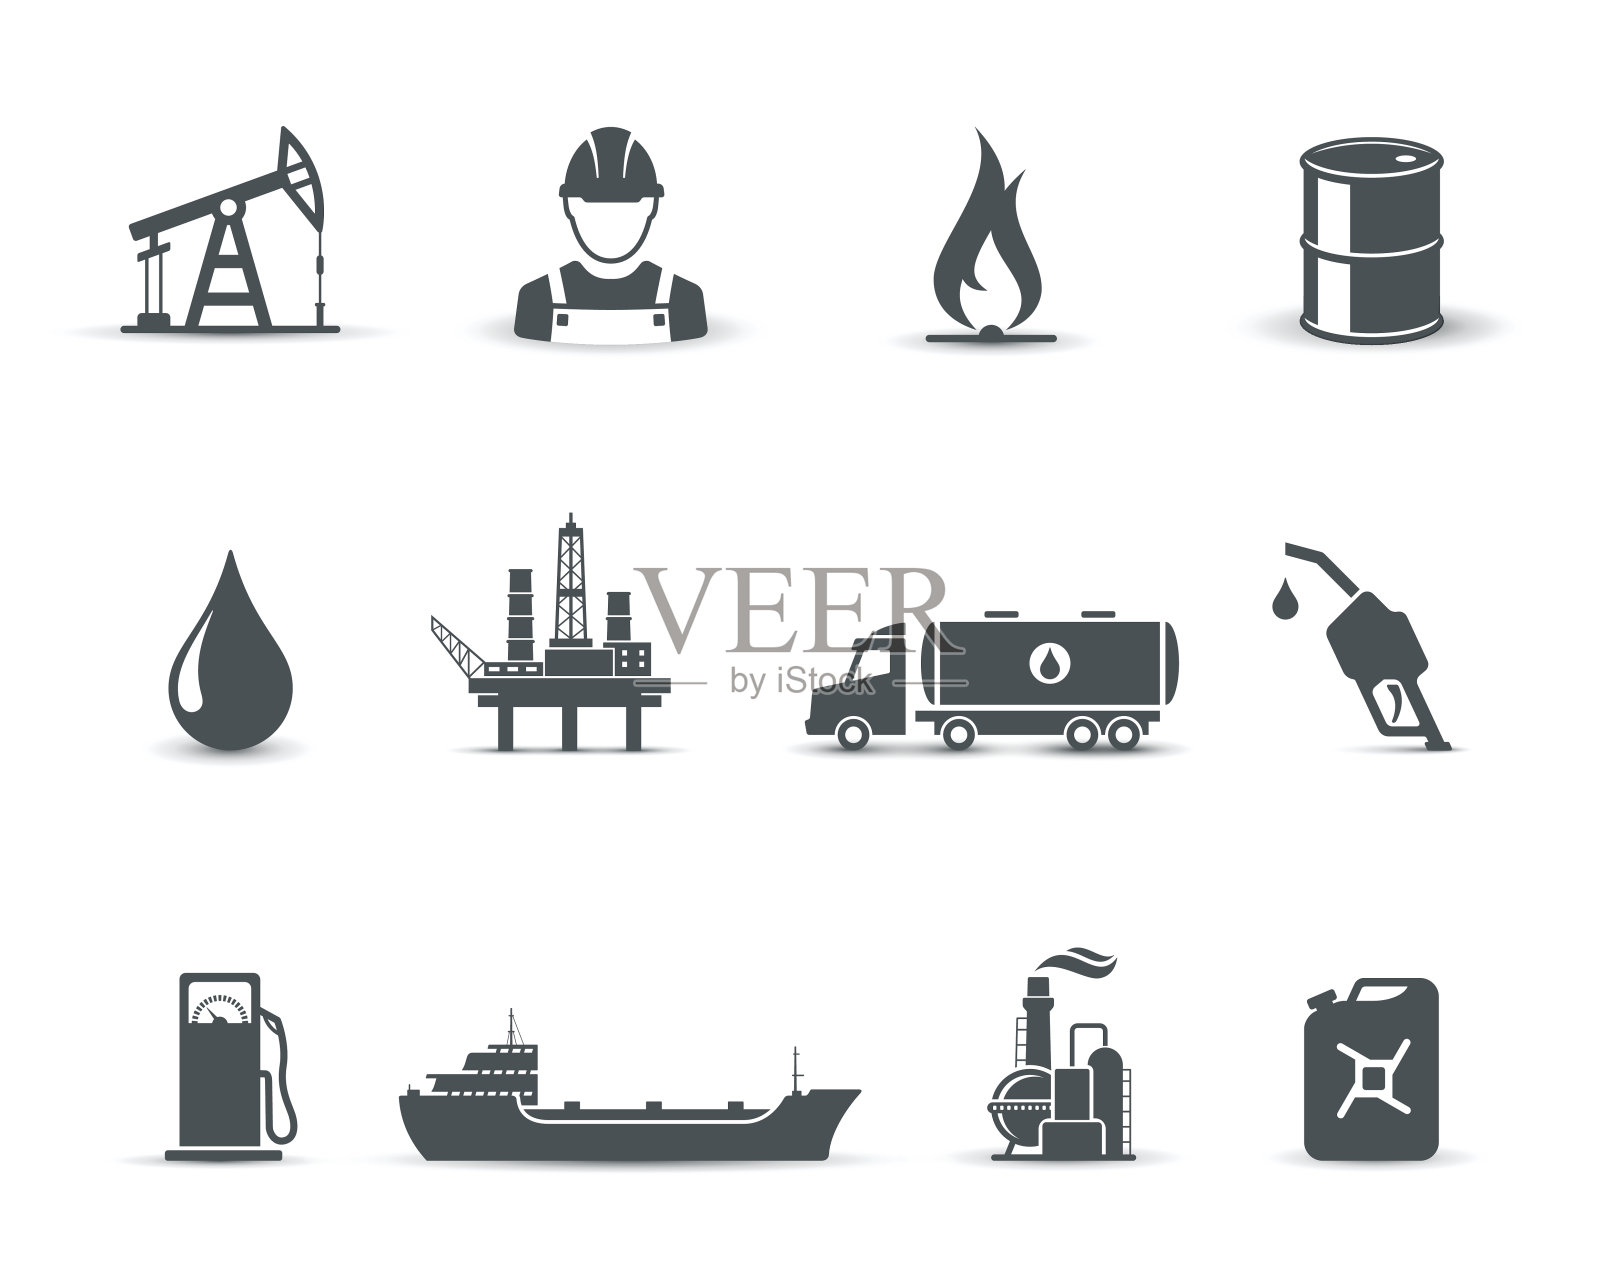 石油和石油工业的标志图标素材